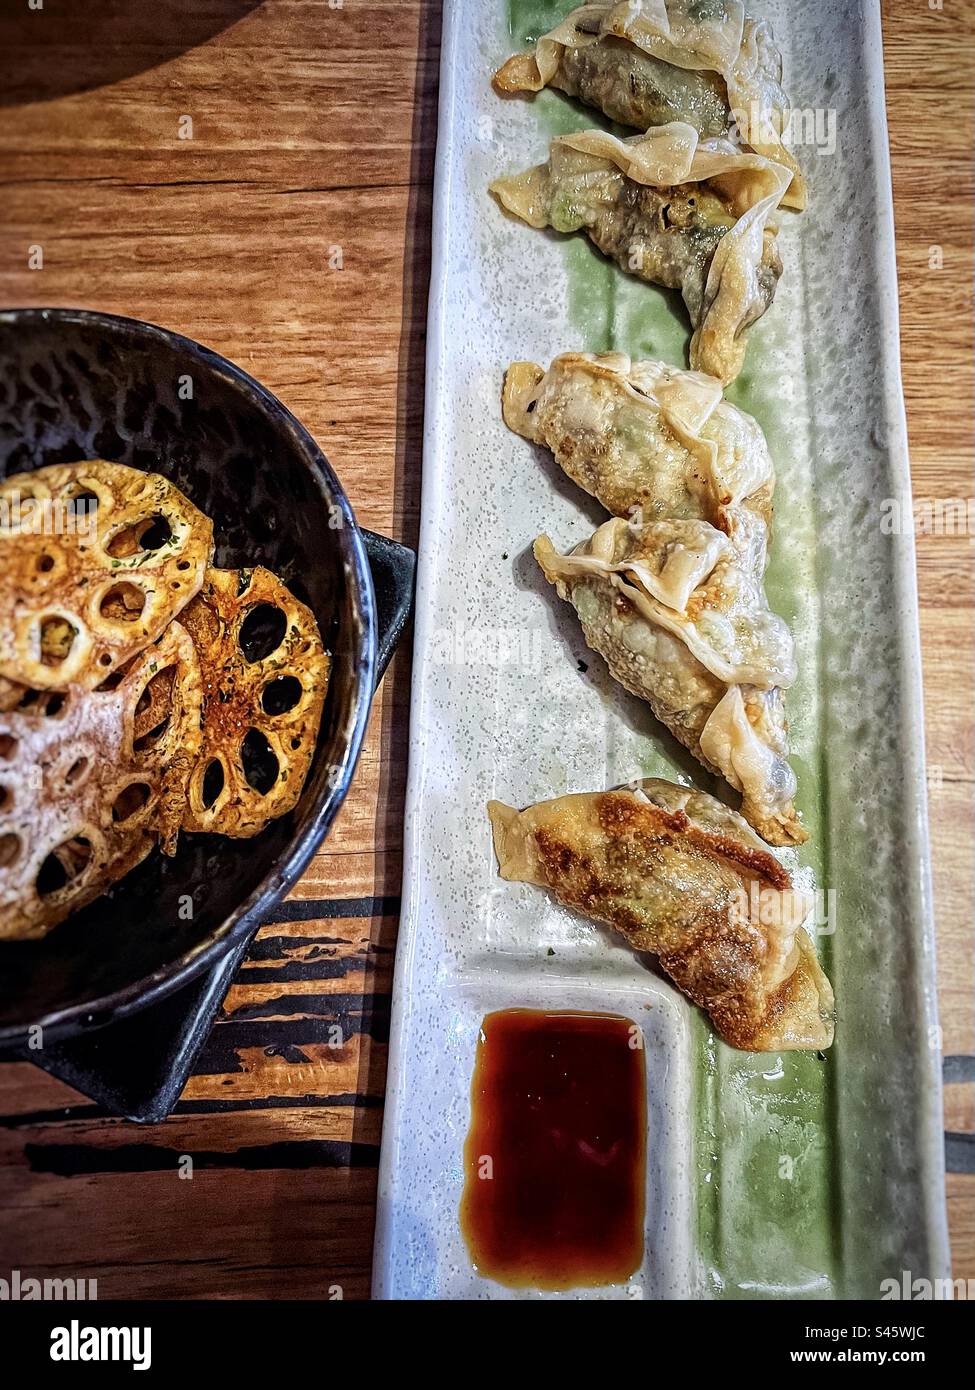 Vista dall'alto della gyoza giapponese o degli gnocchi con salsa di soia immersi su un piatto accanto alle patatine di radice di loto in una ciotola sul tavolo. Foto Stock